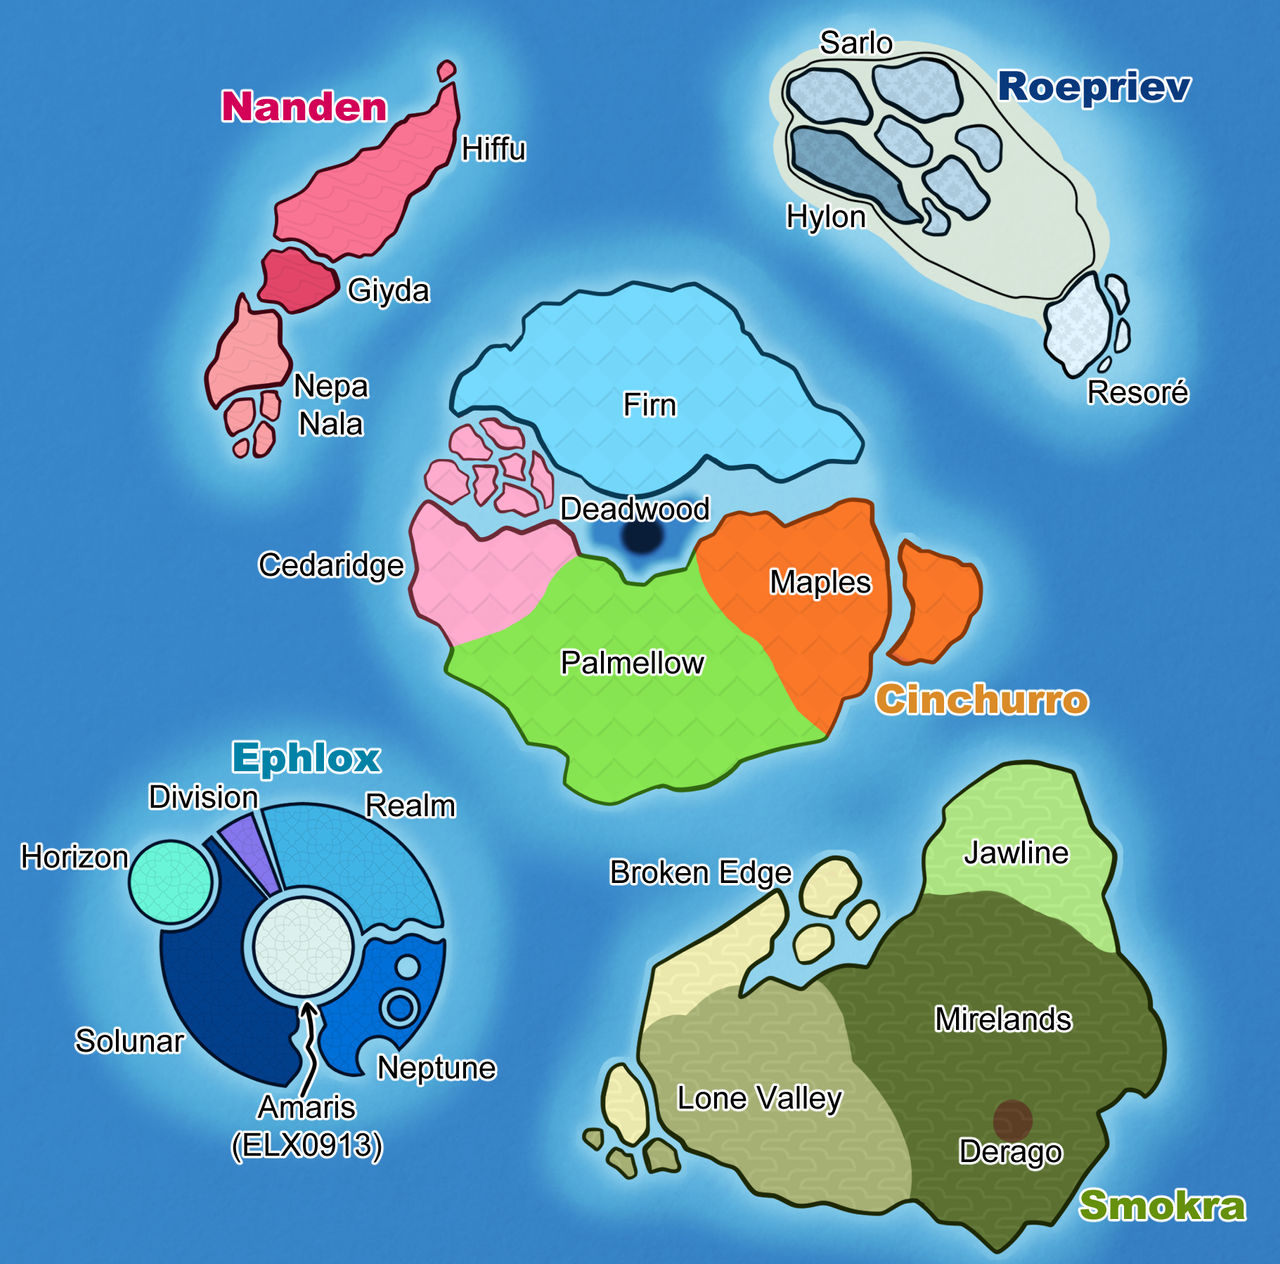 One Piece map by DrewEffe on DeviantArt